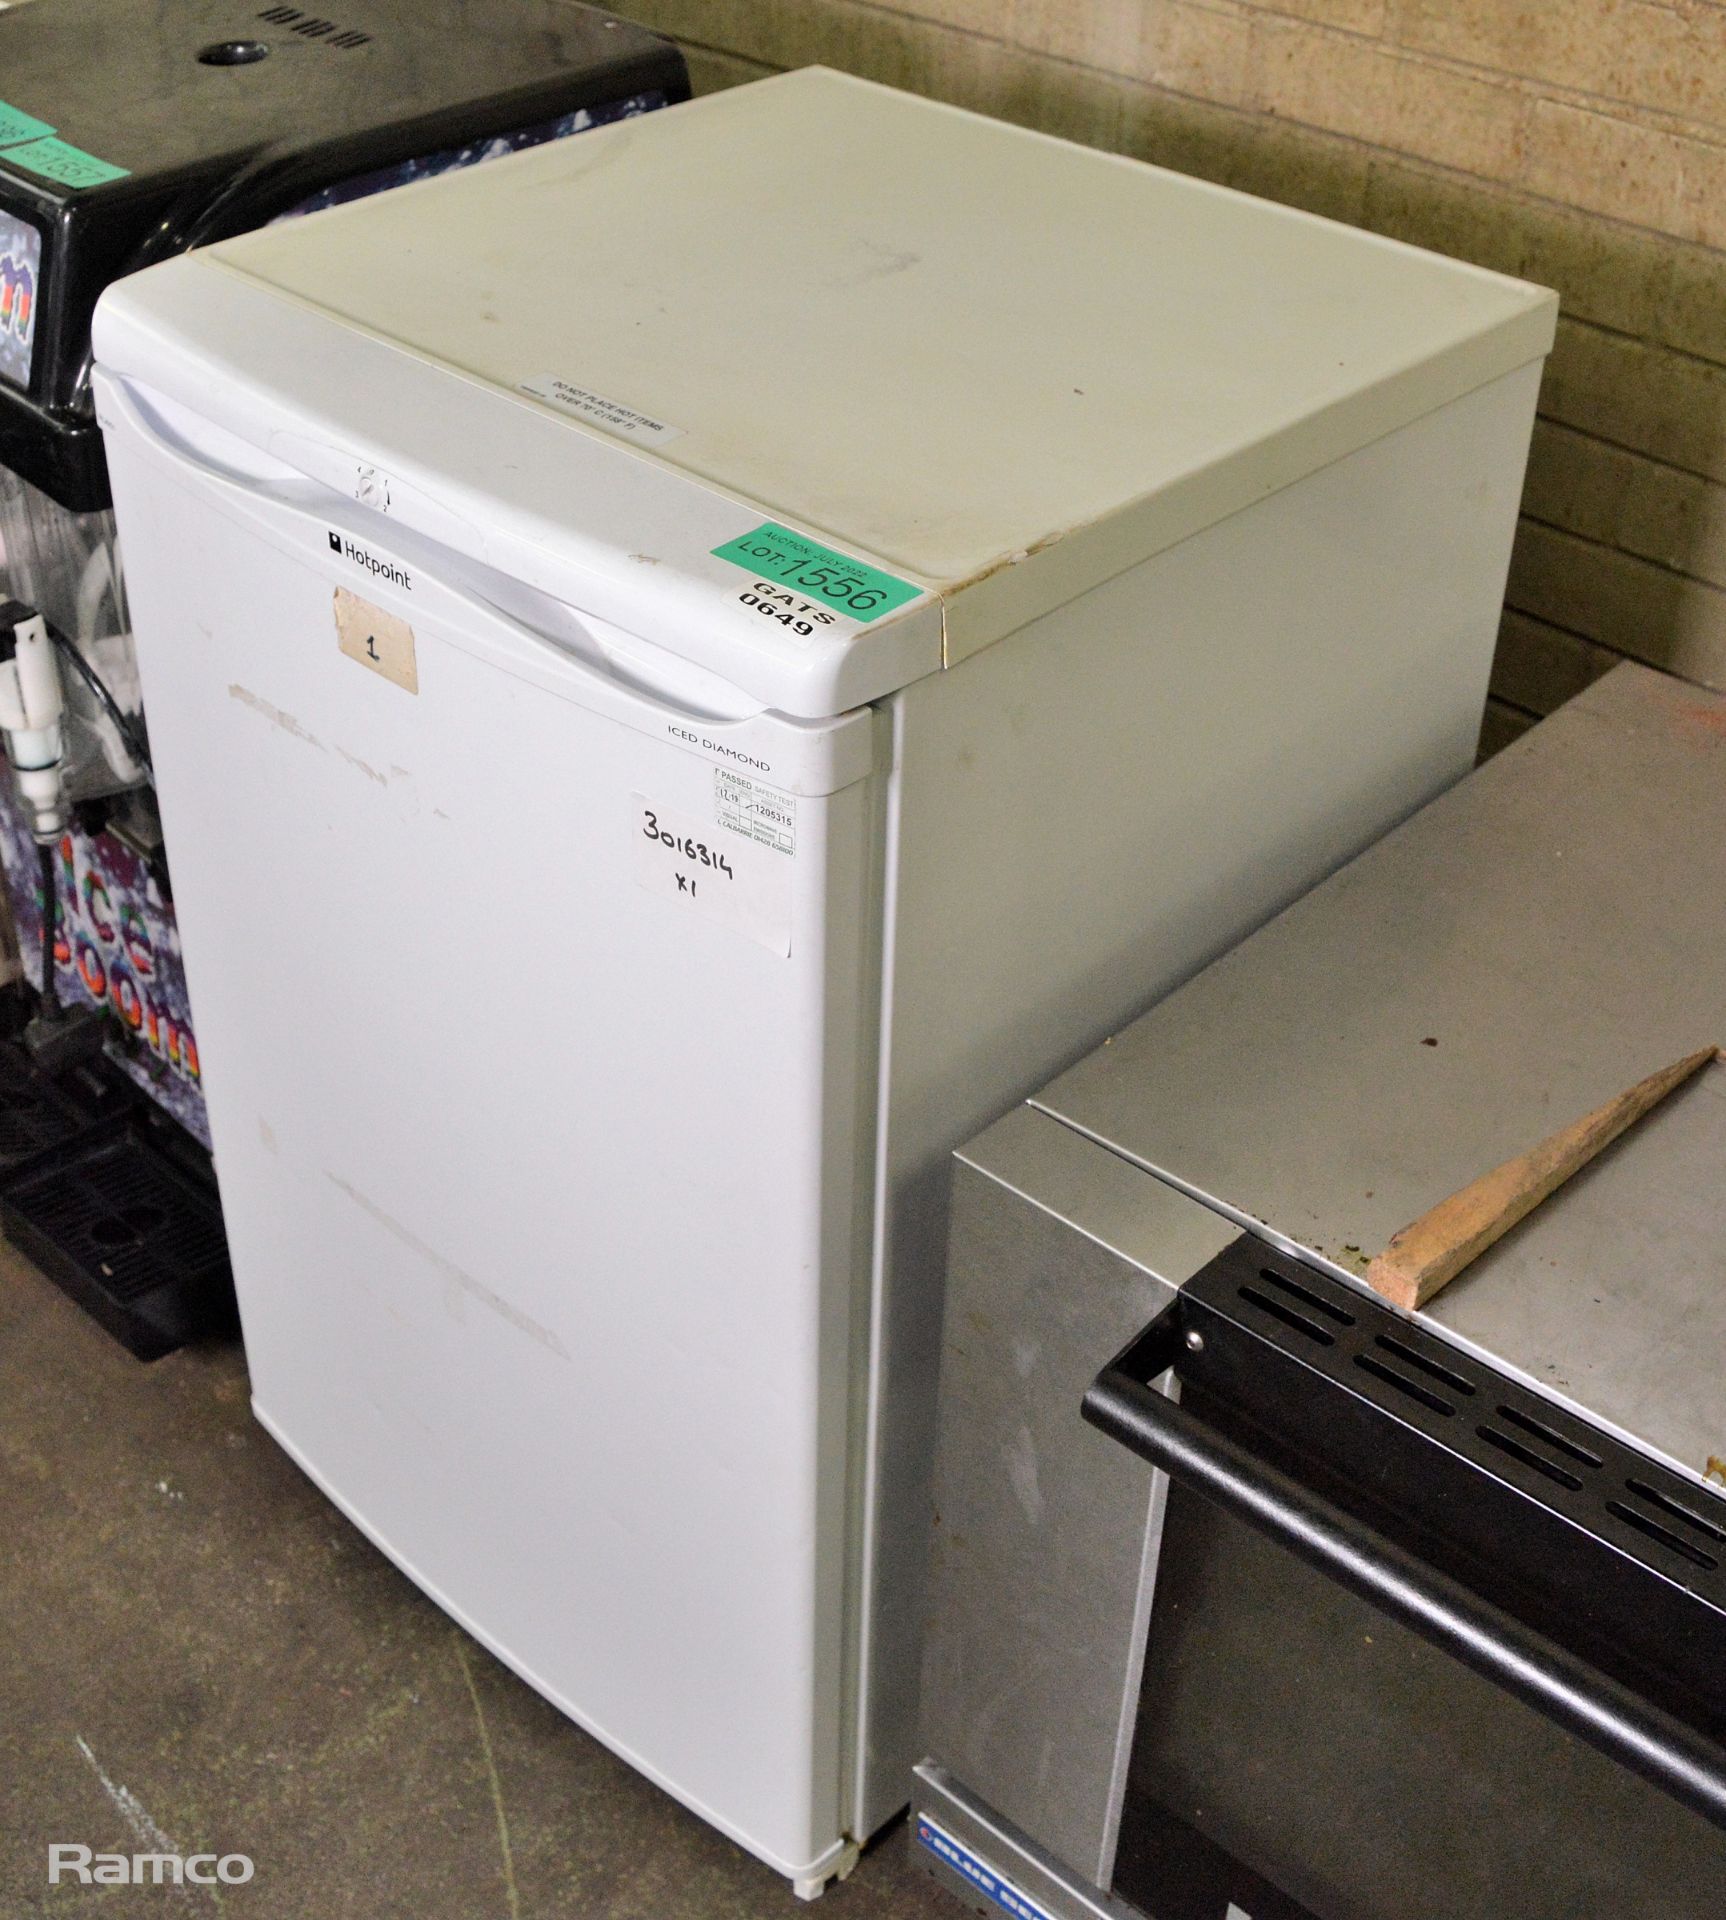 Hotpoint Rlav21 undercounter refrigerator 240V - Image 5 of 5